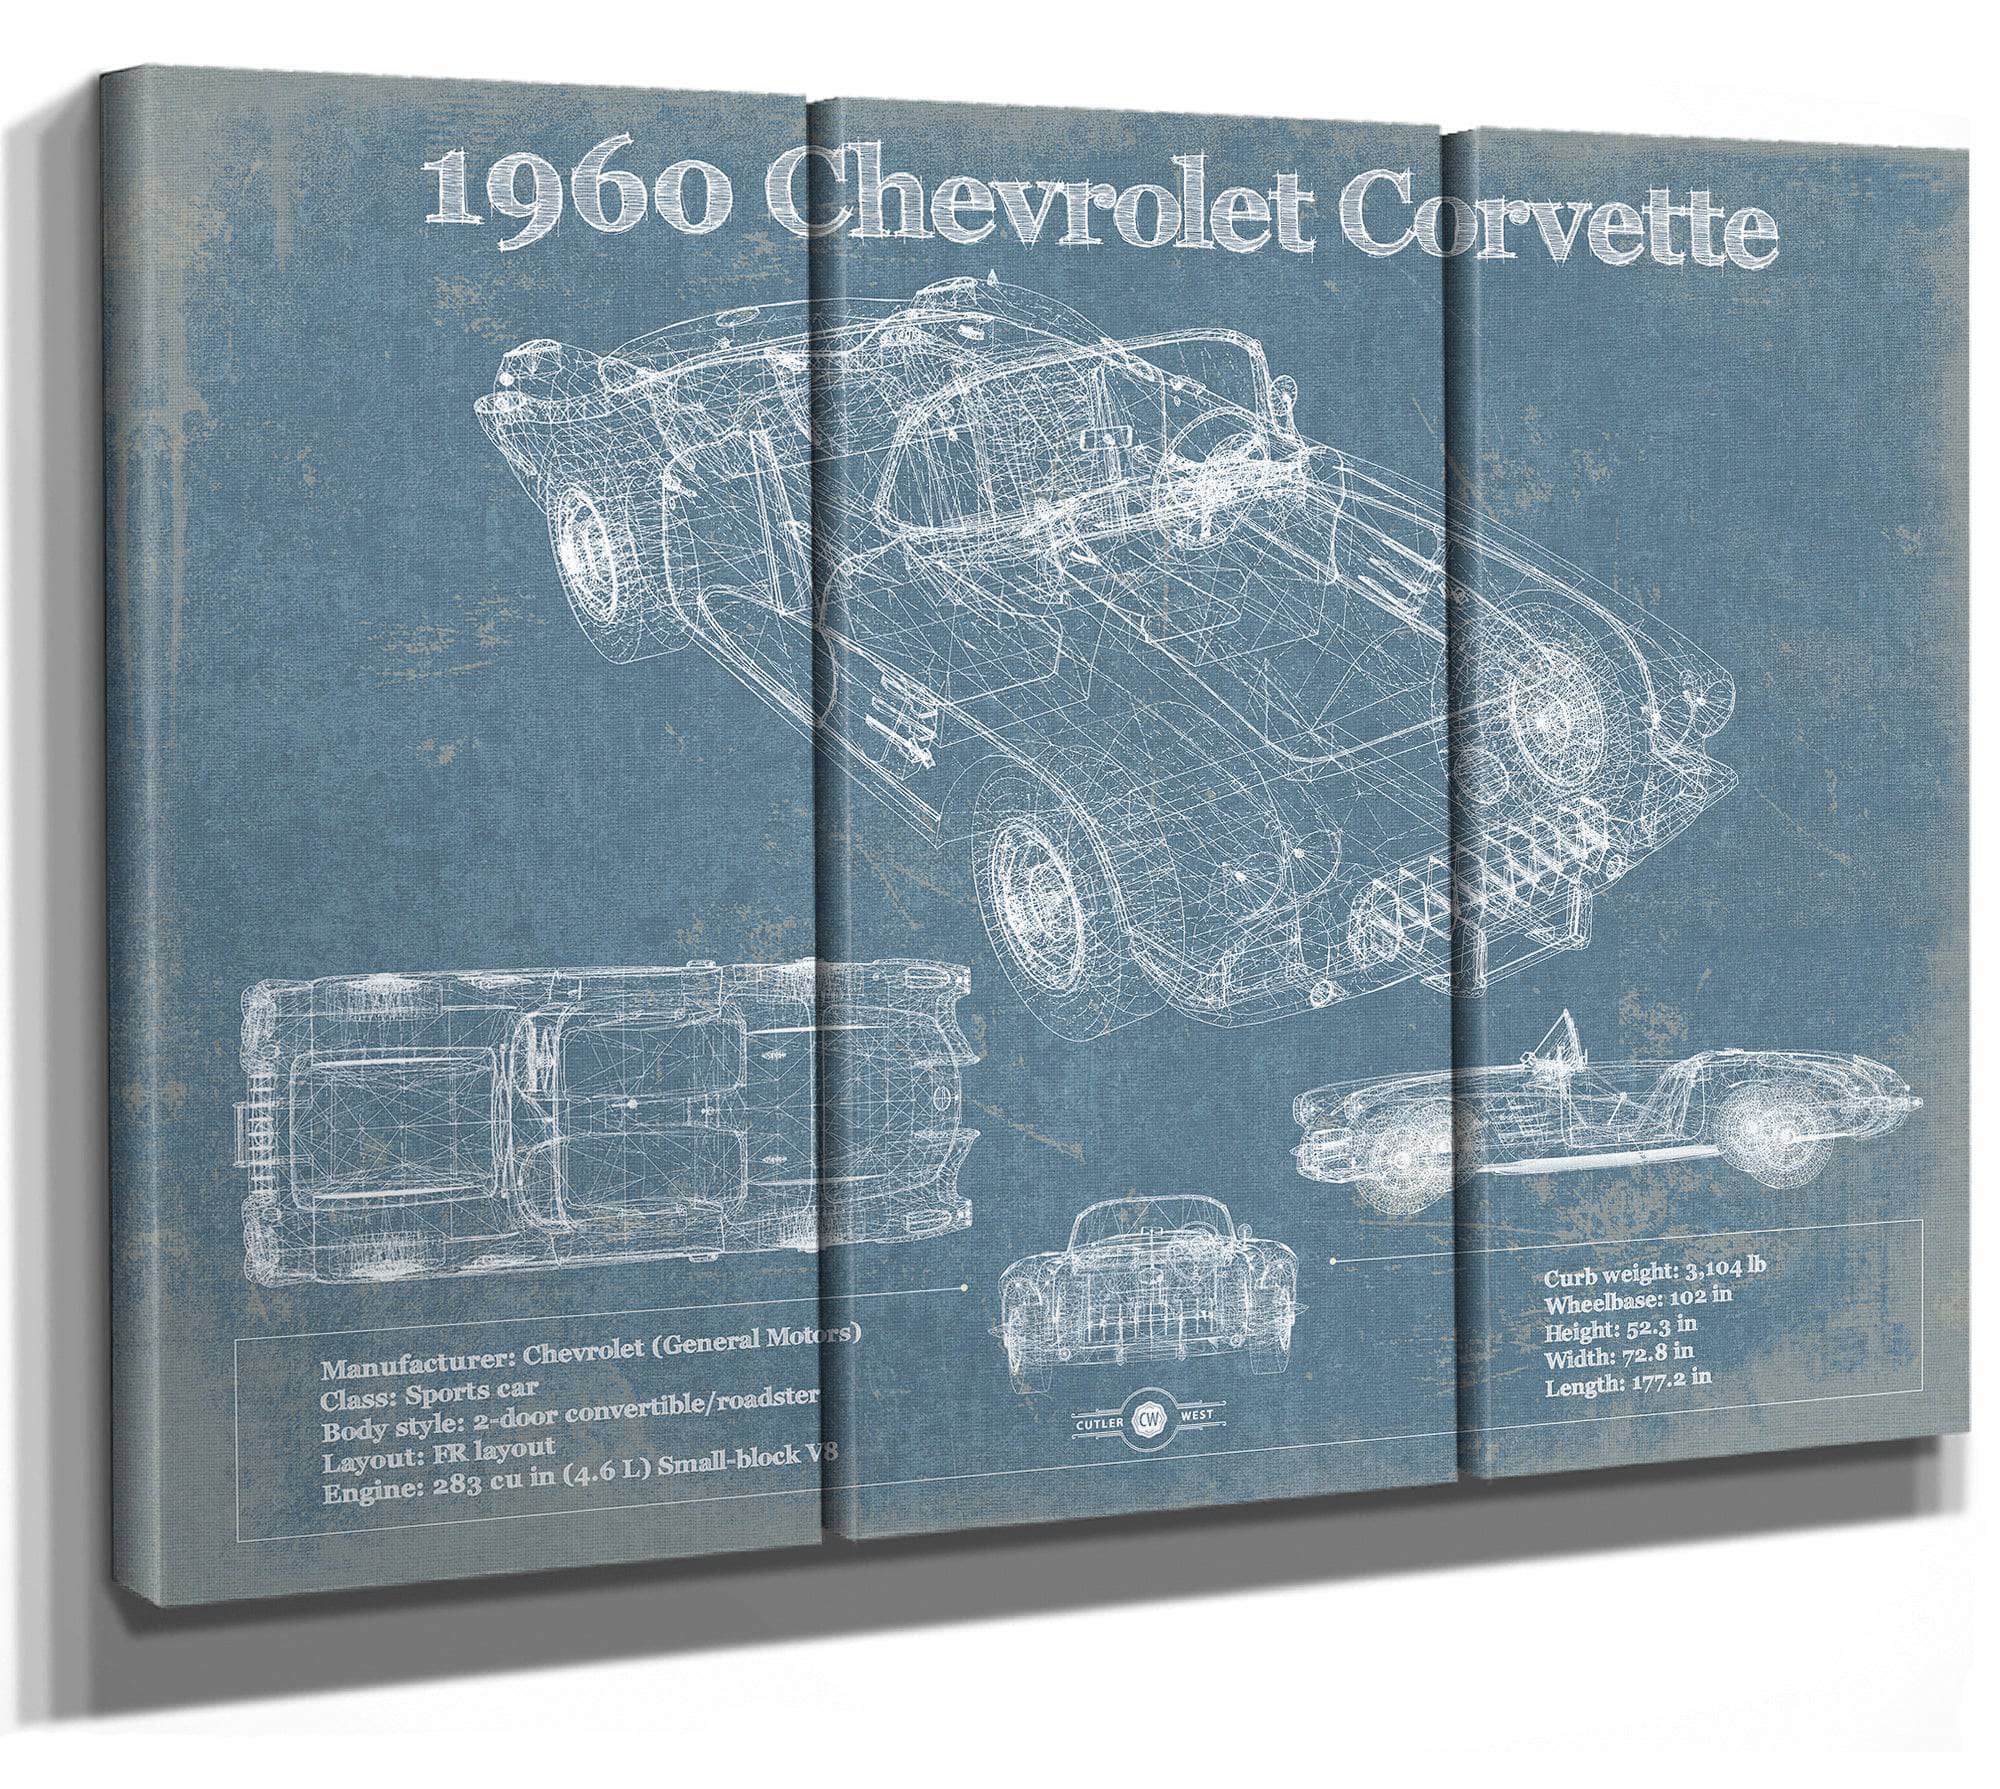 1960 Chevrolet Corvette C1 Blueprint Vintage Auto Print